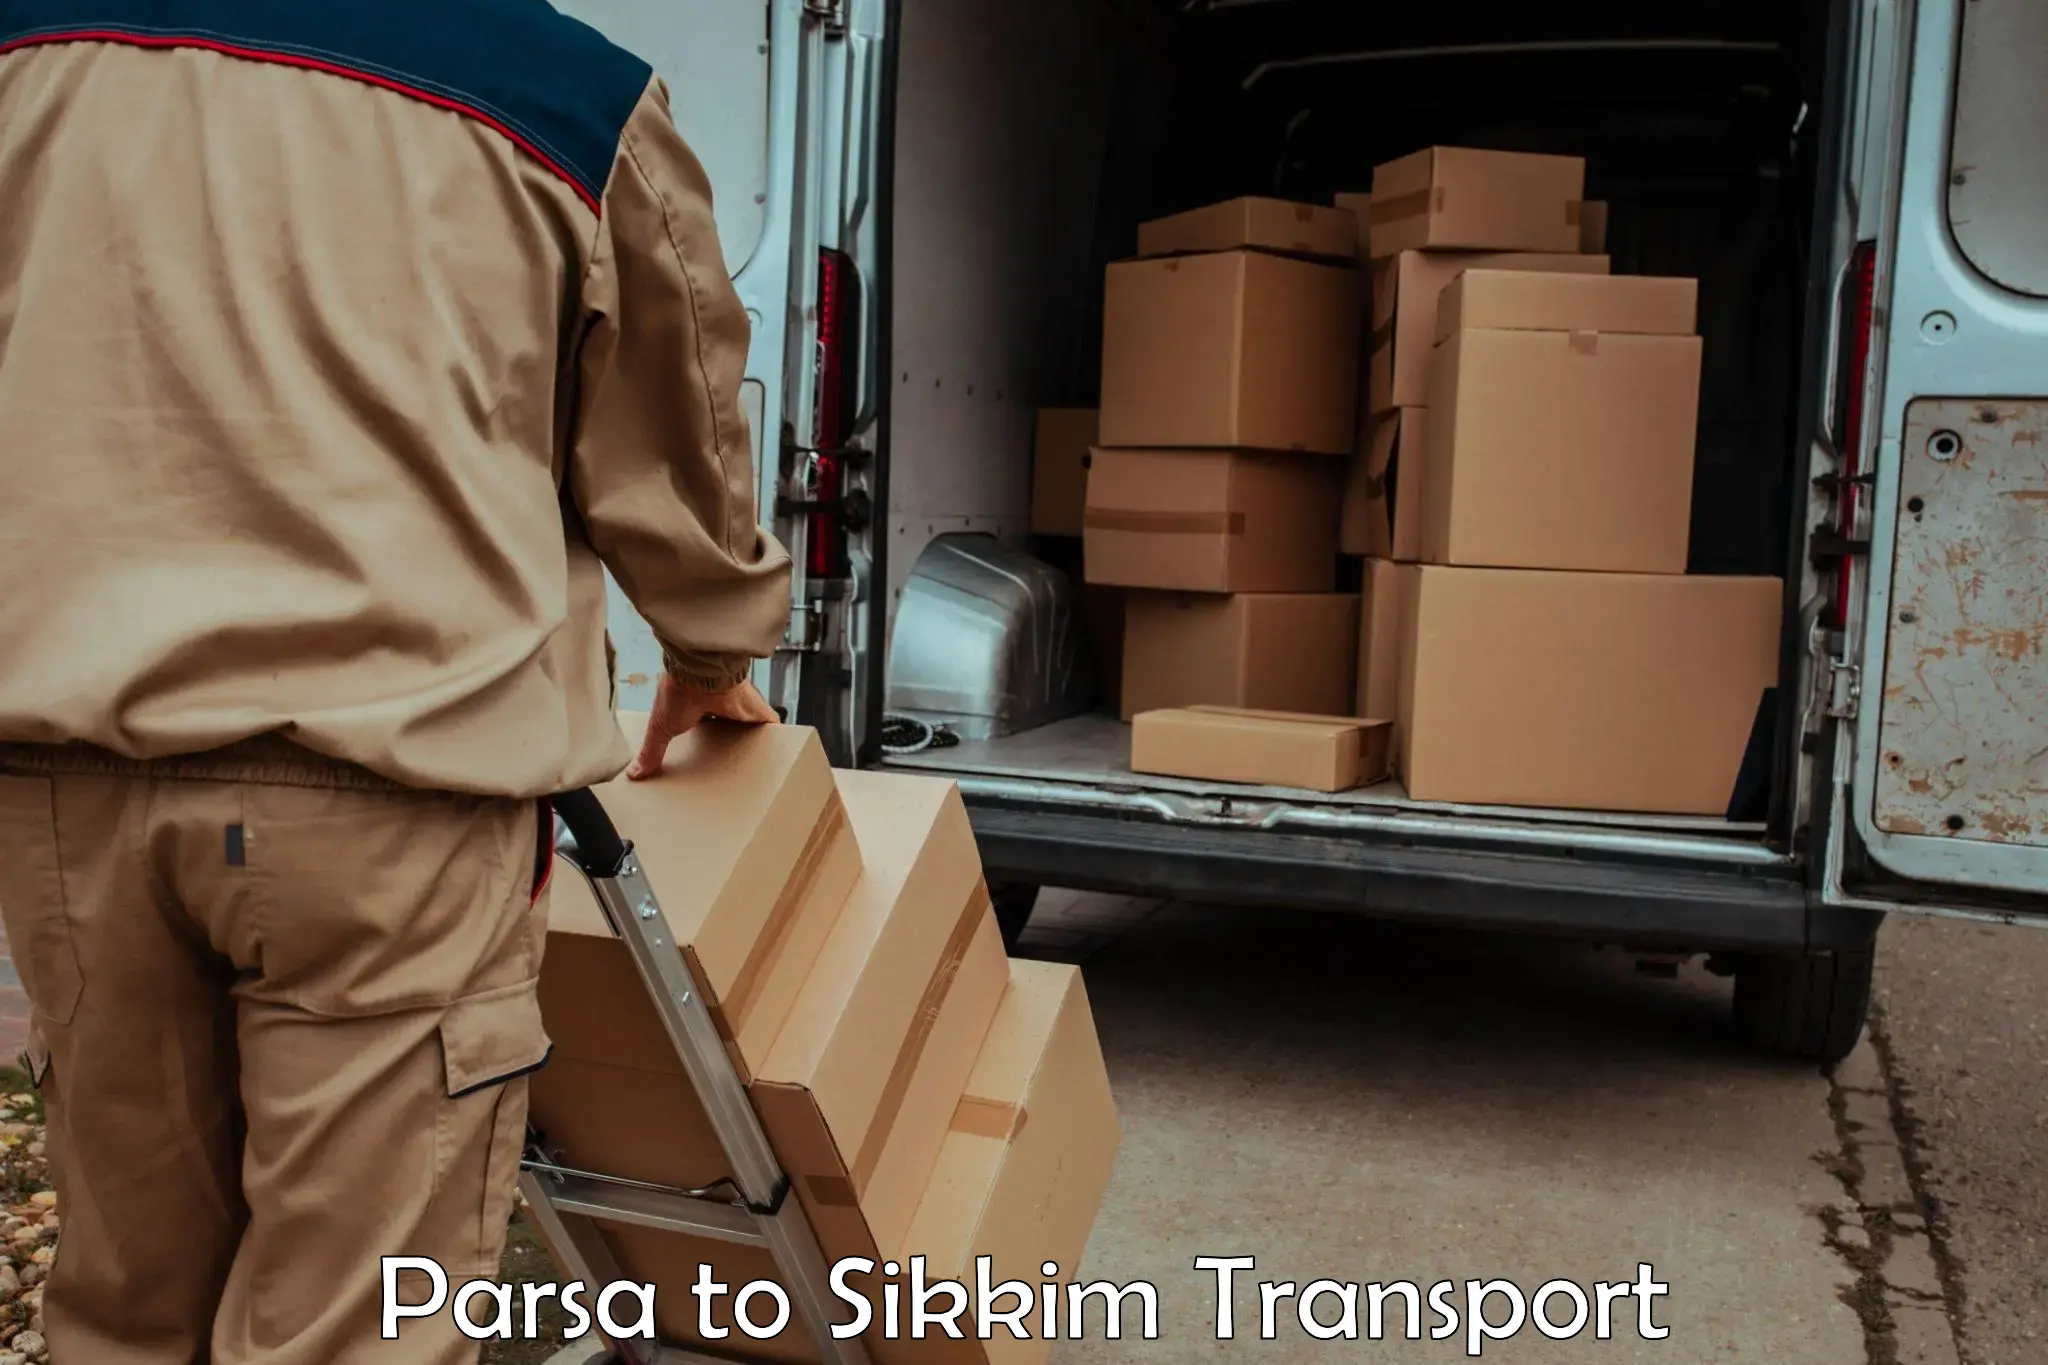 Furniture transport service Parsa to Geyzing